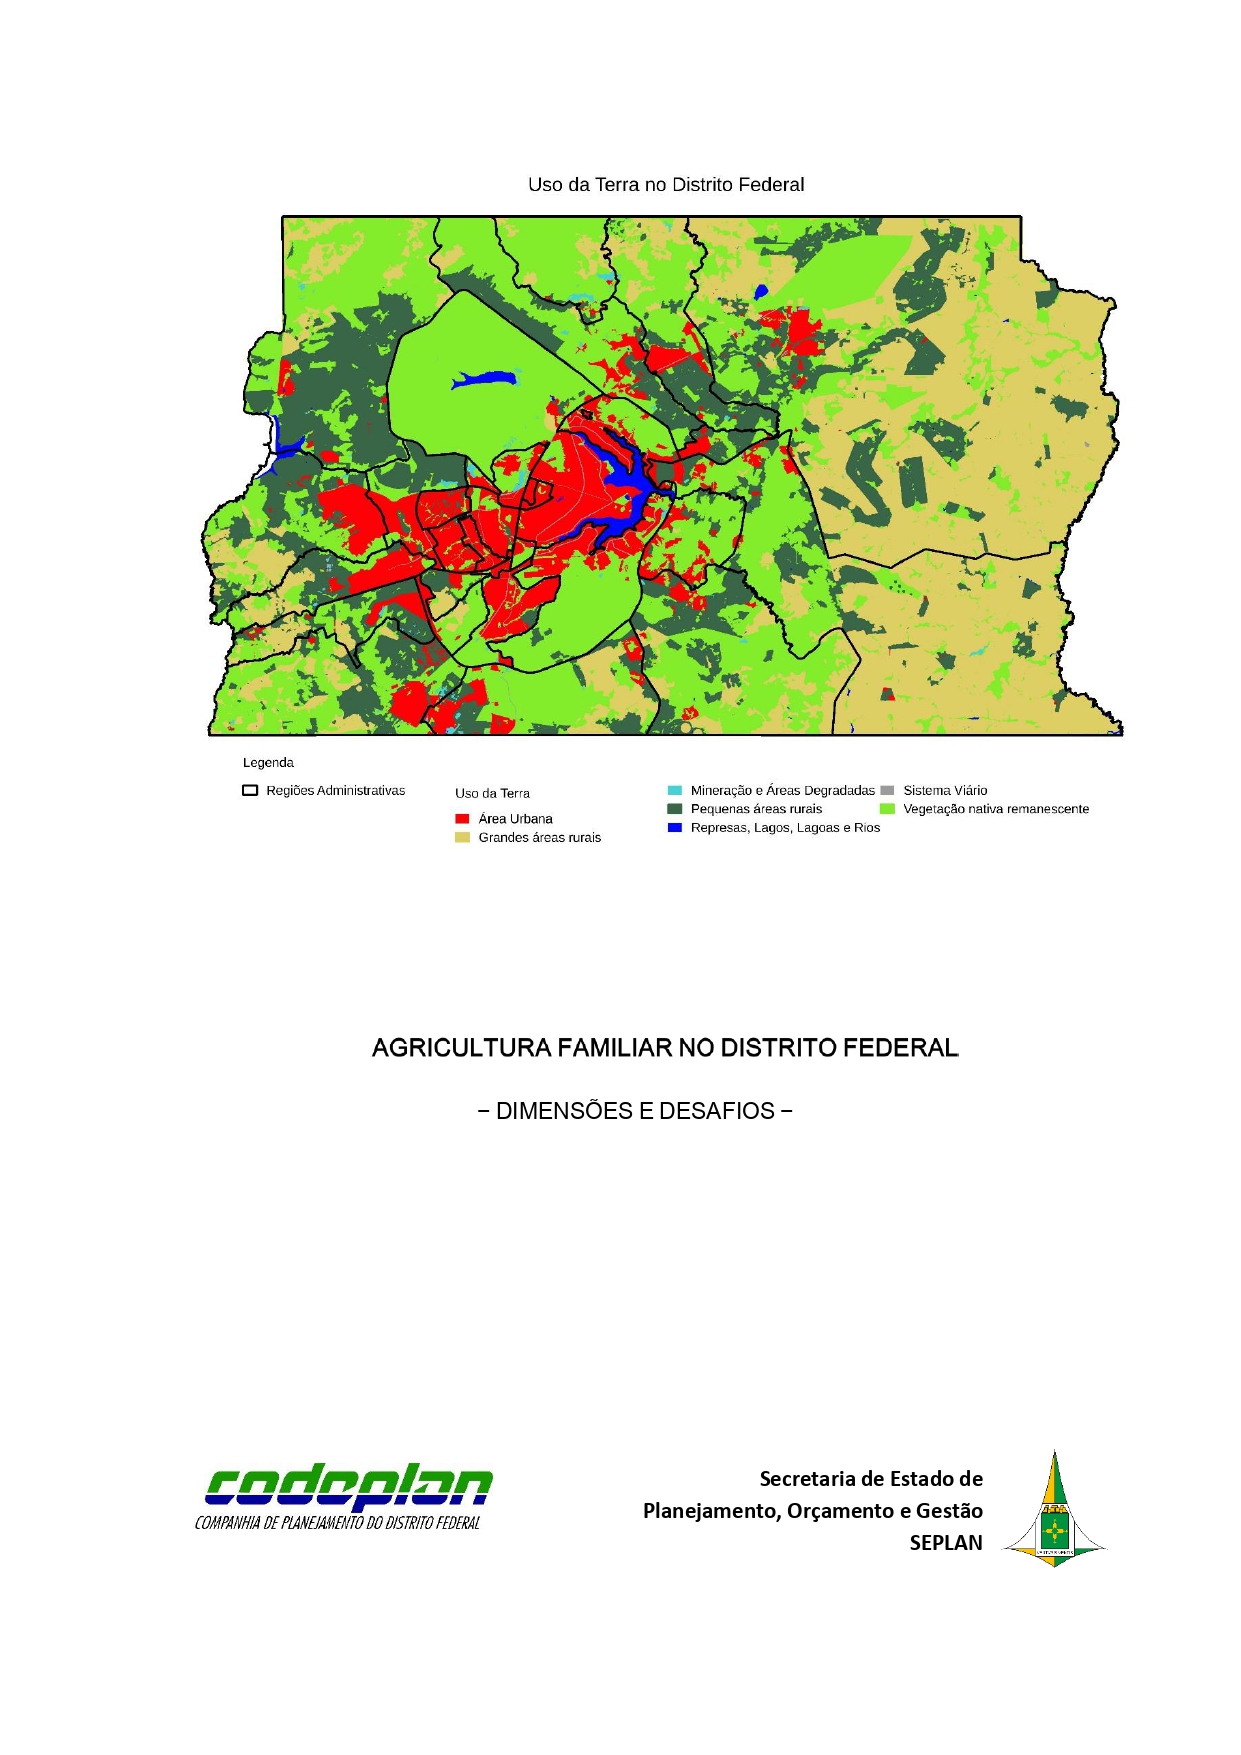 Agricultura familiar no Distrito Federal desafios e dimensões